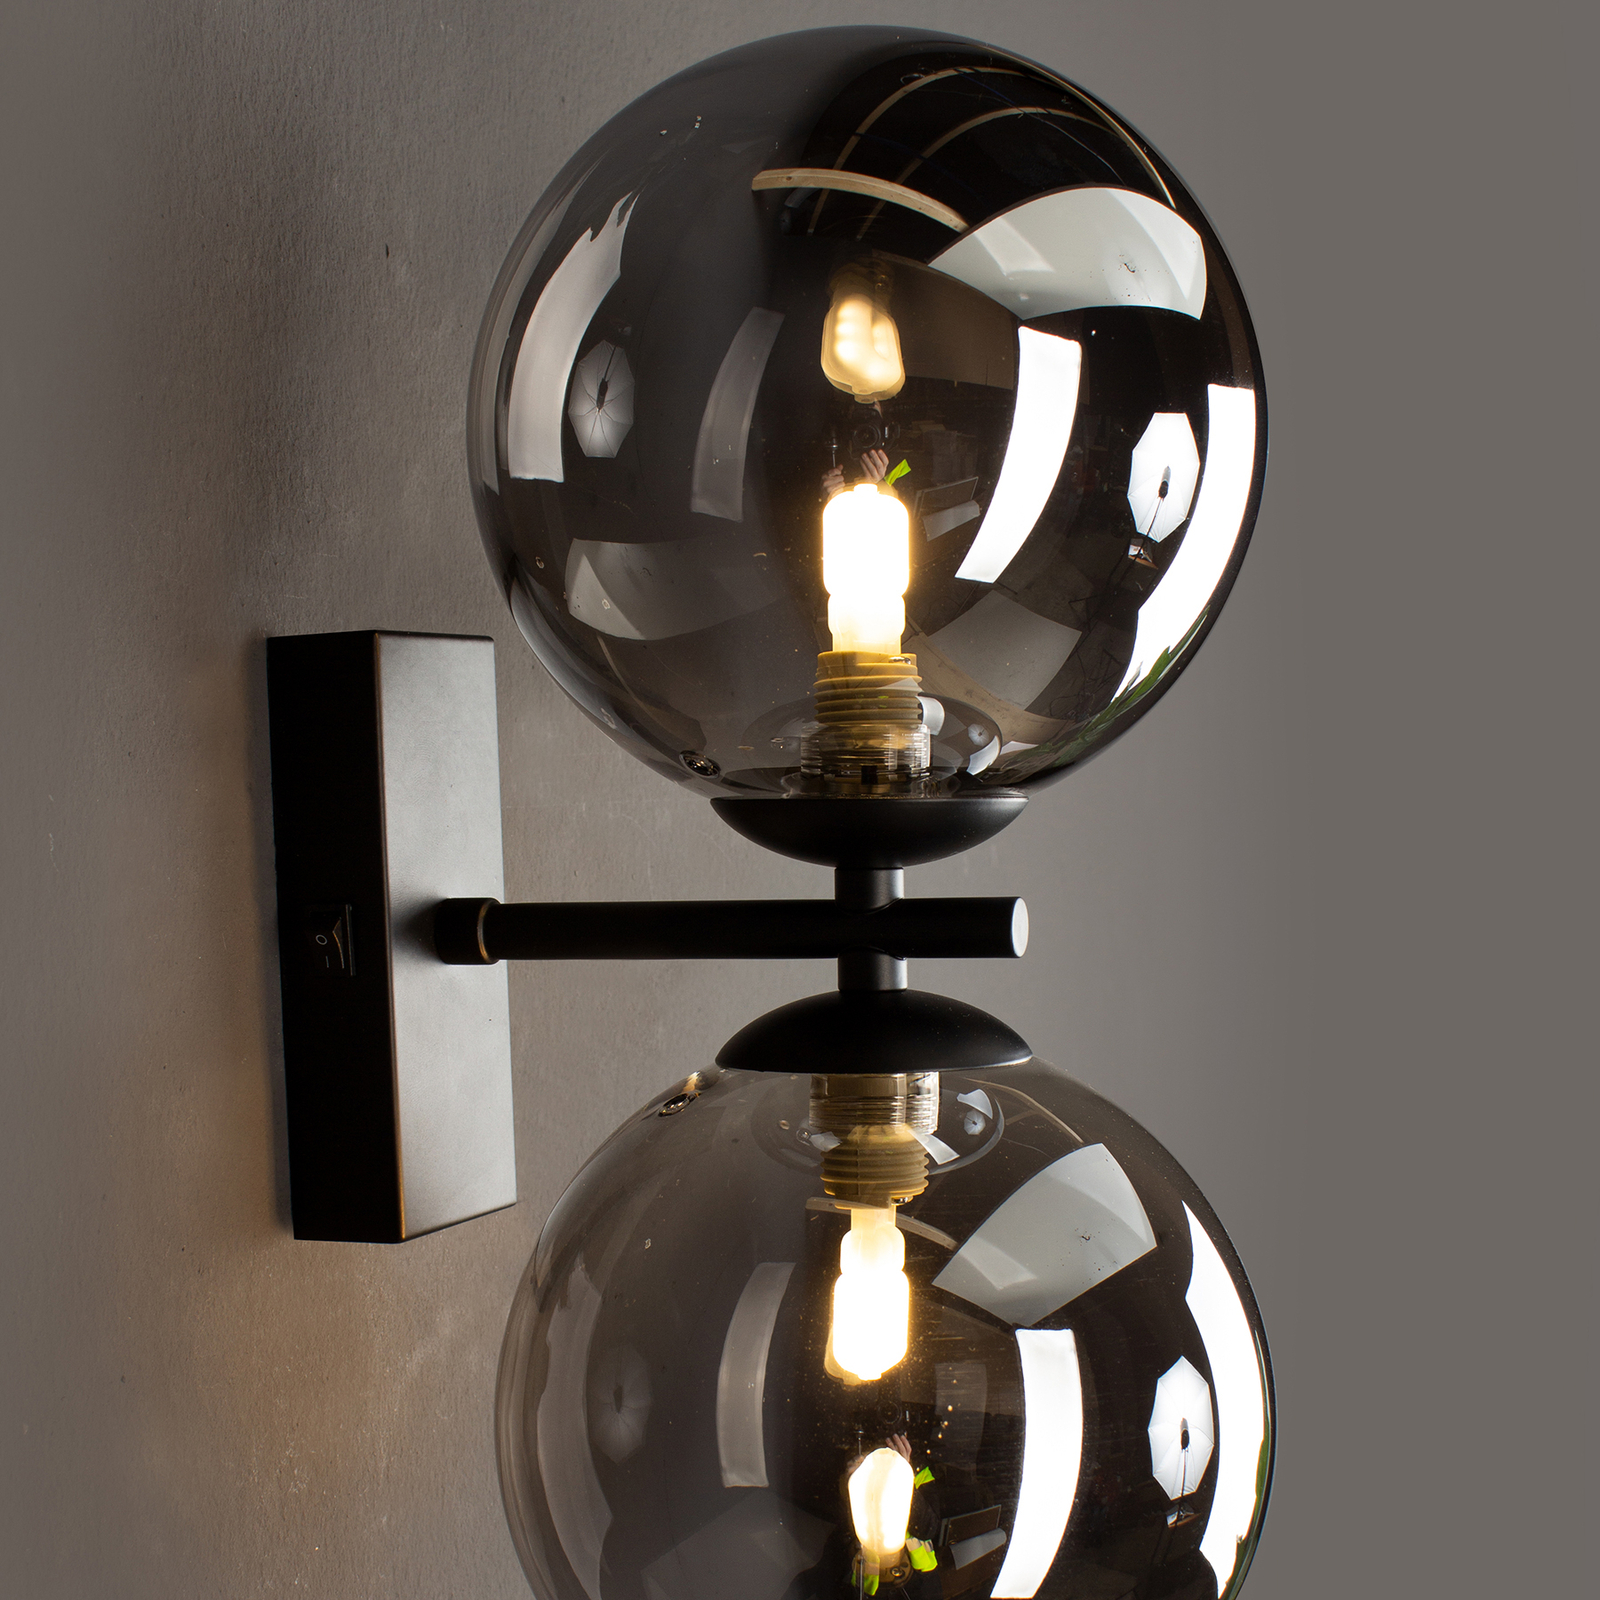 Neptune wall light 2-bulb black, glass globes